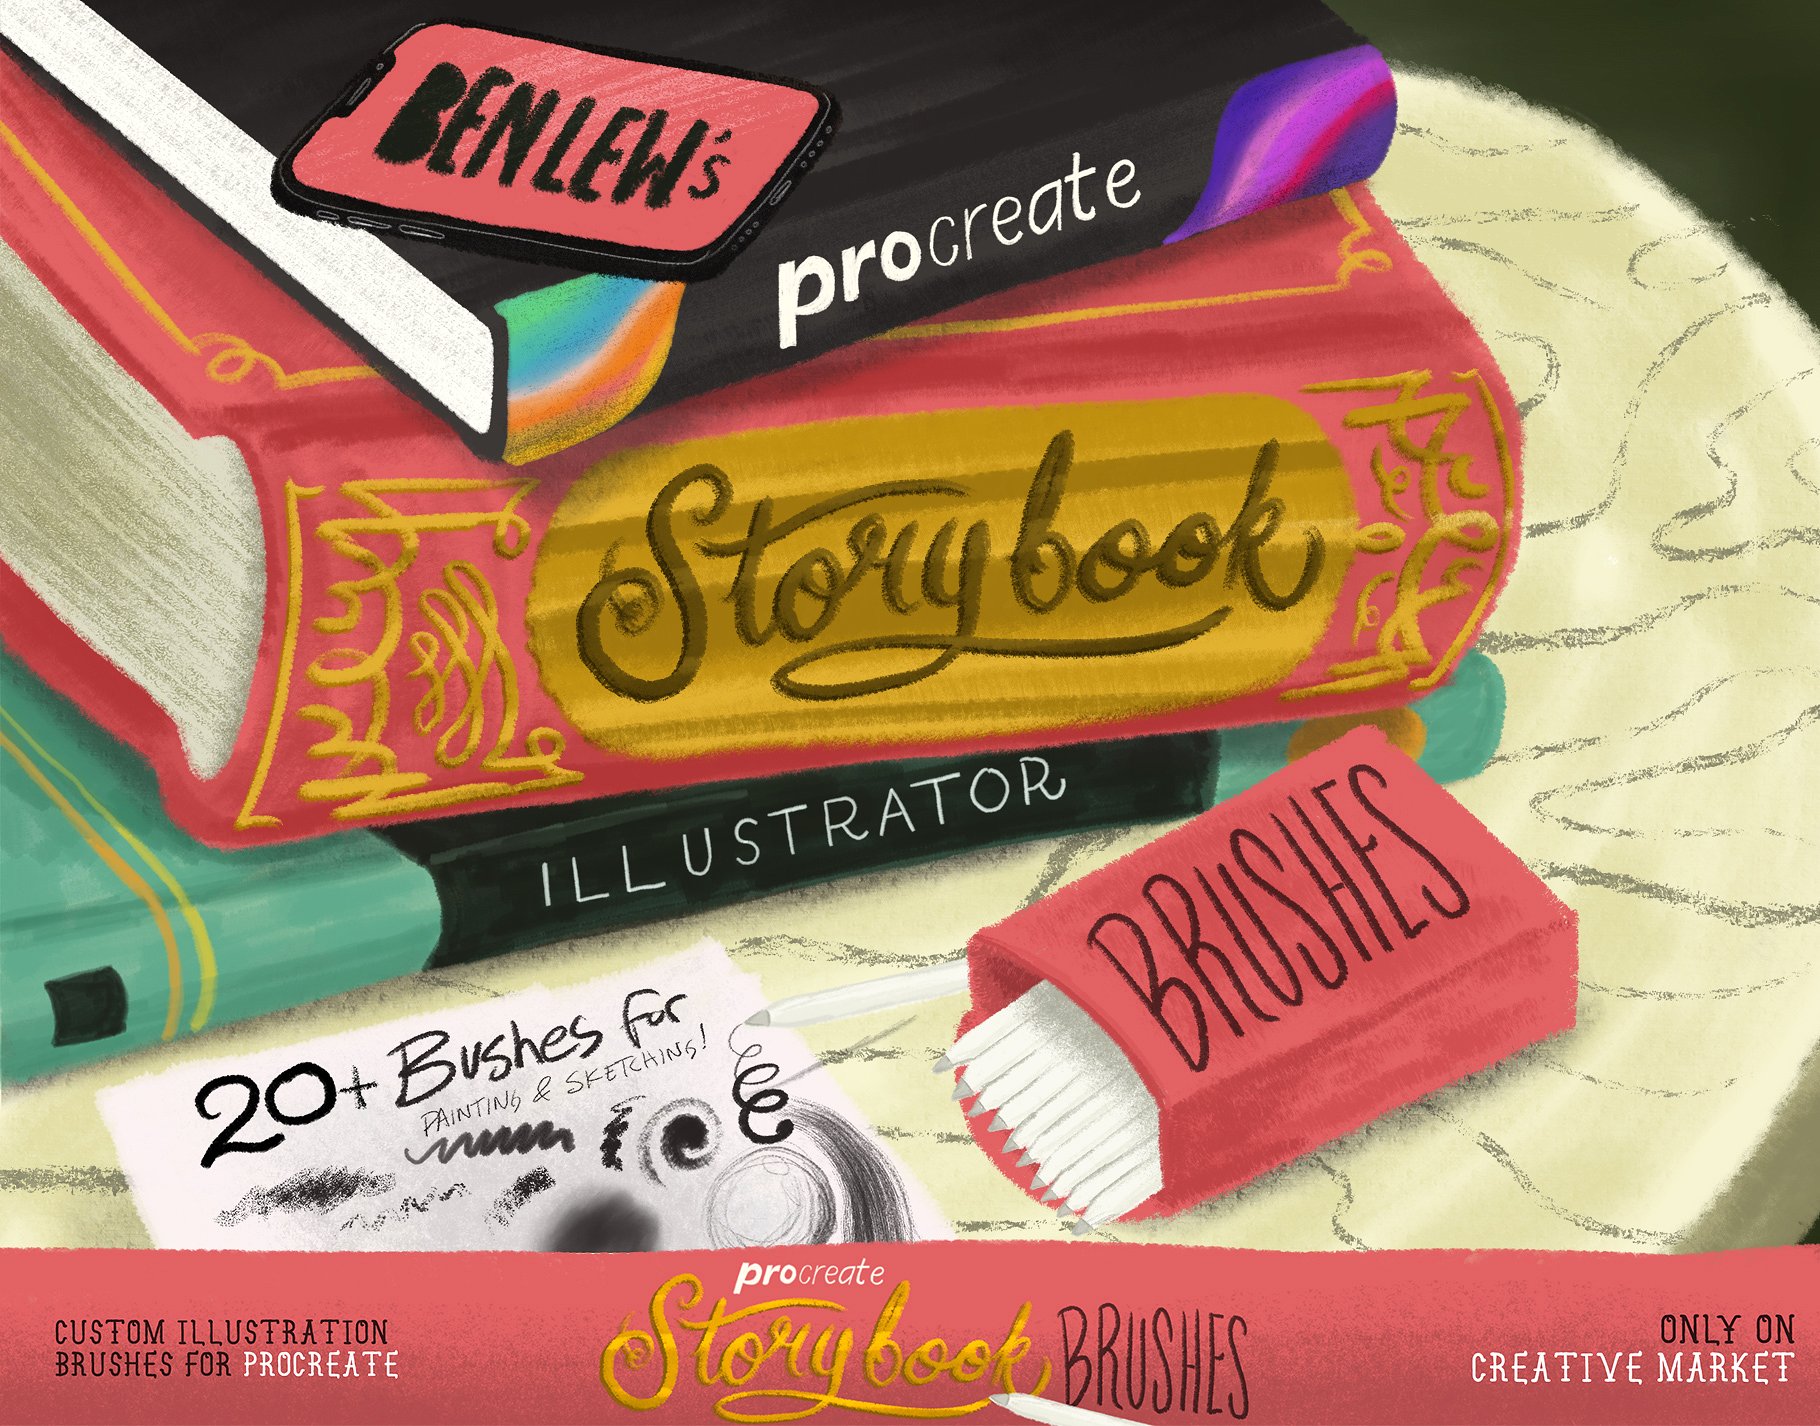 故事书插画风格Procreate画笔笔刷 Storybook Illustrator for Procreate插图